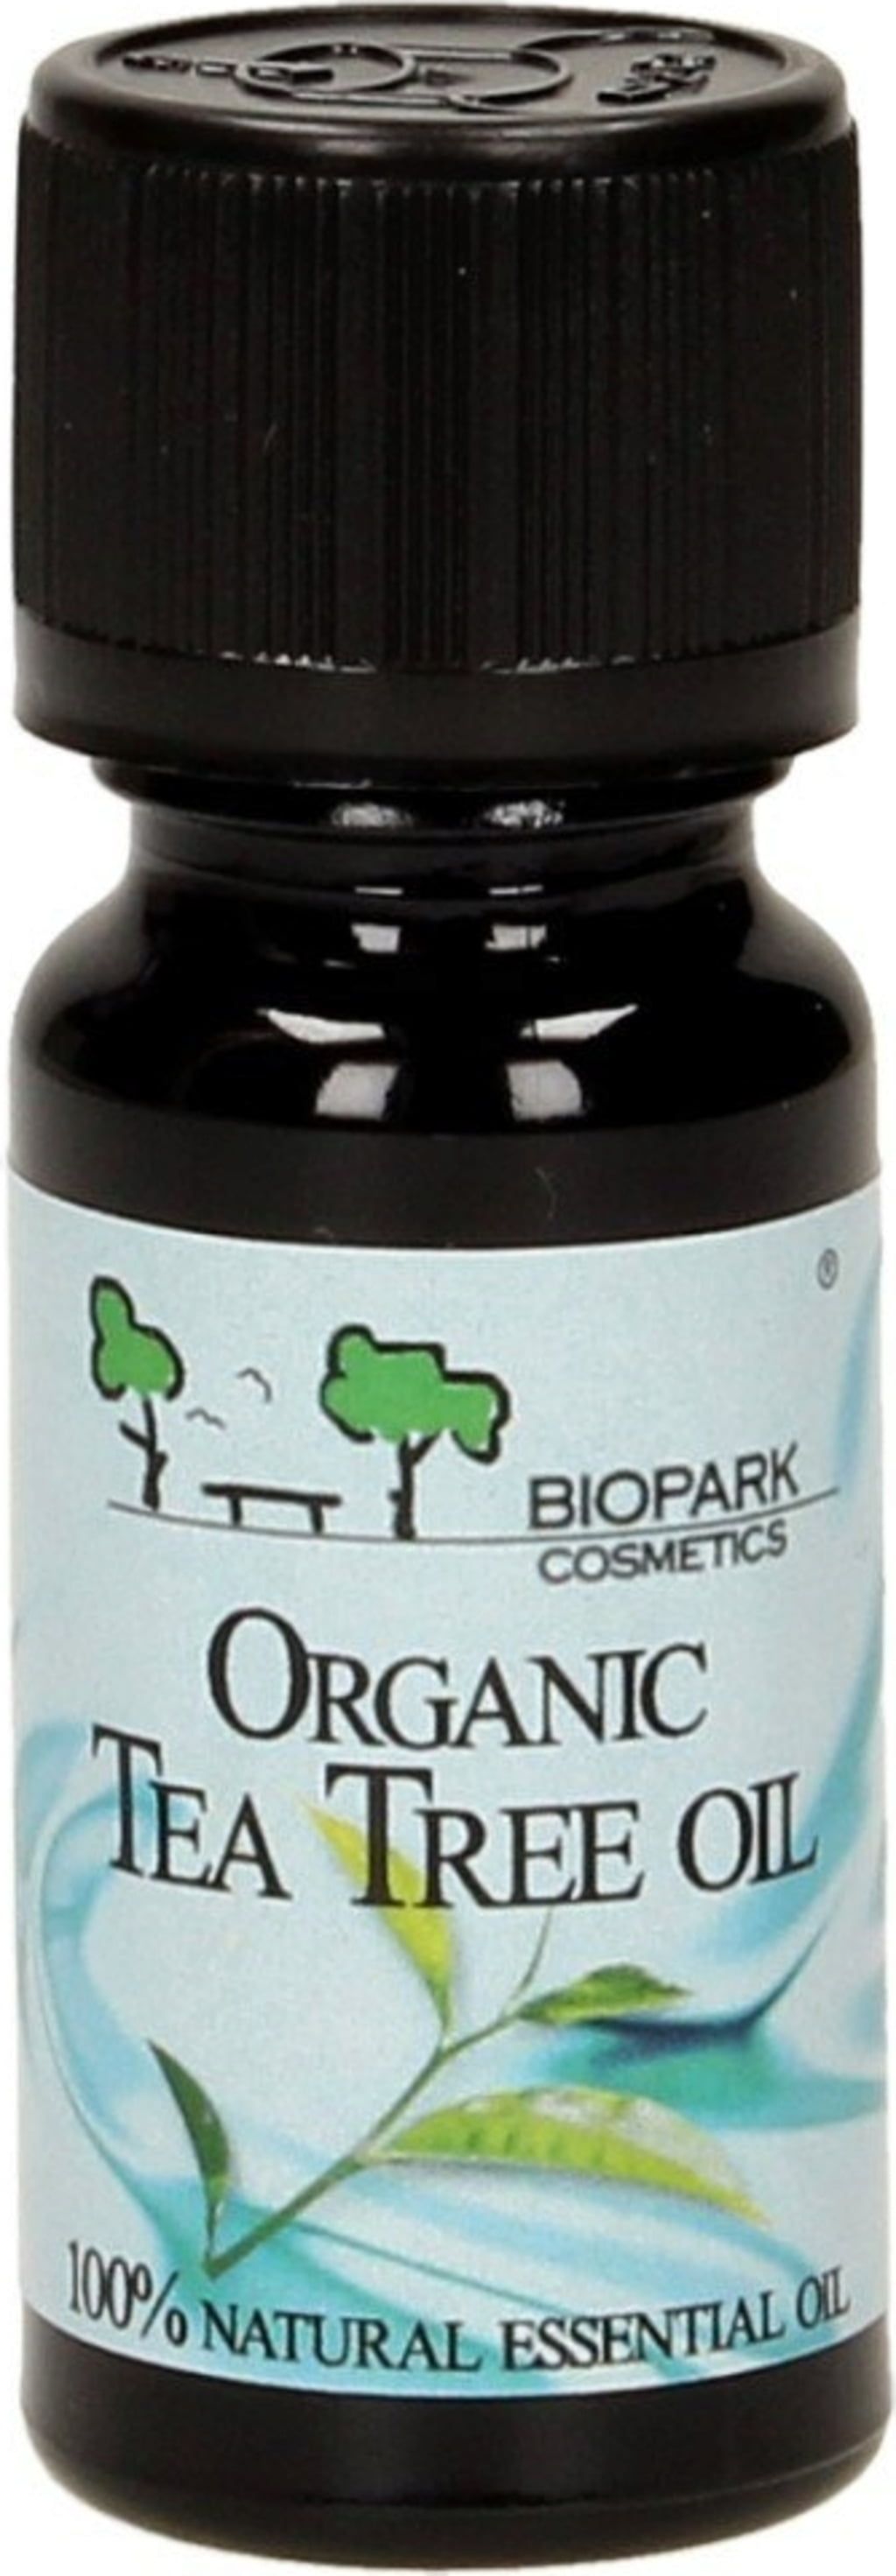 Biopark Cosmetics Huile Essentielle de Tea Tree Bio - 10 ml